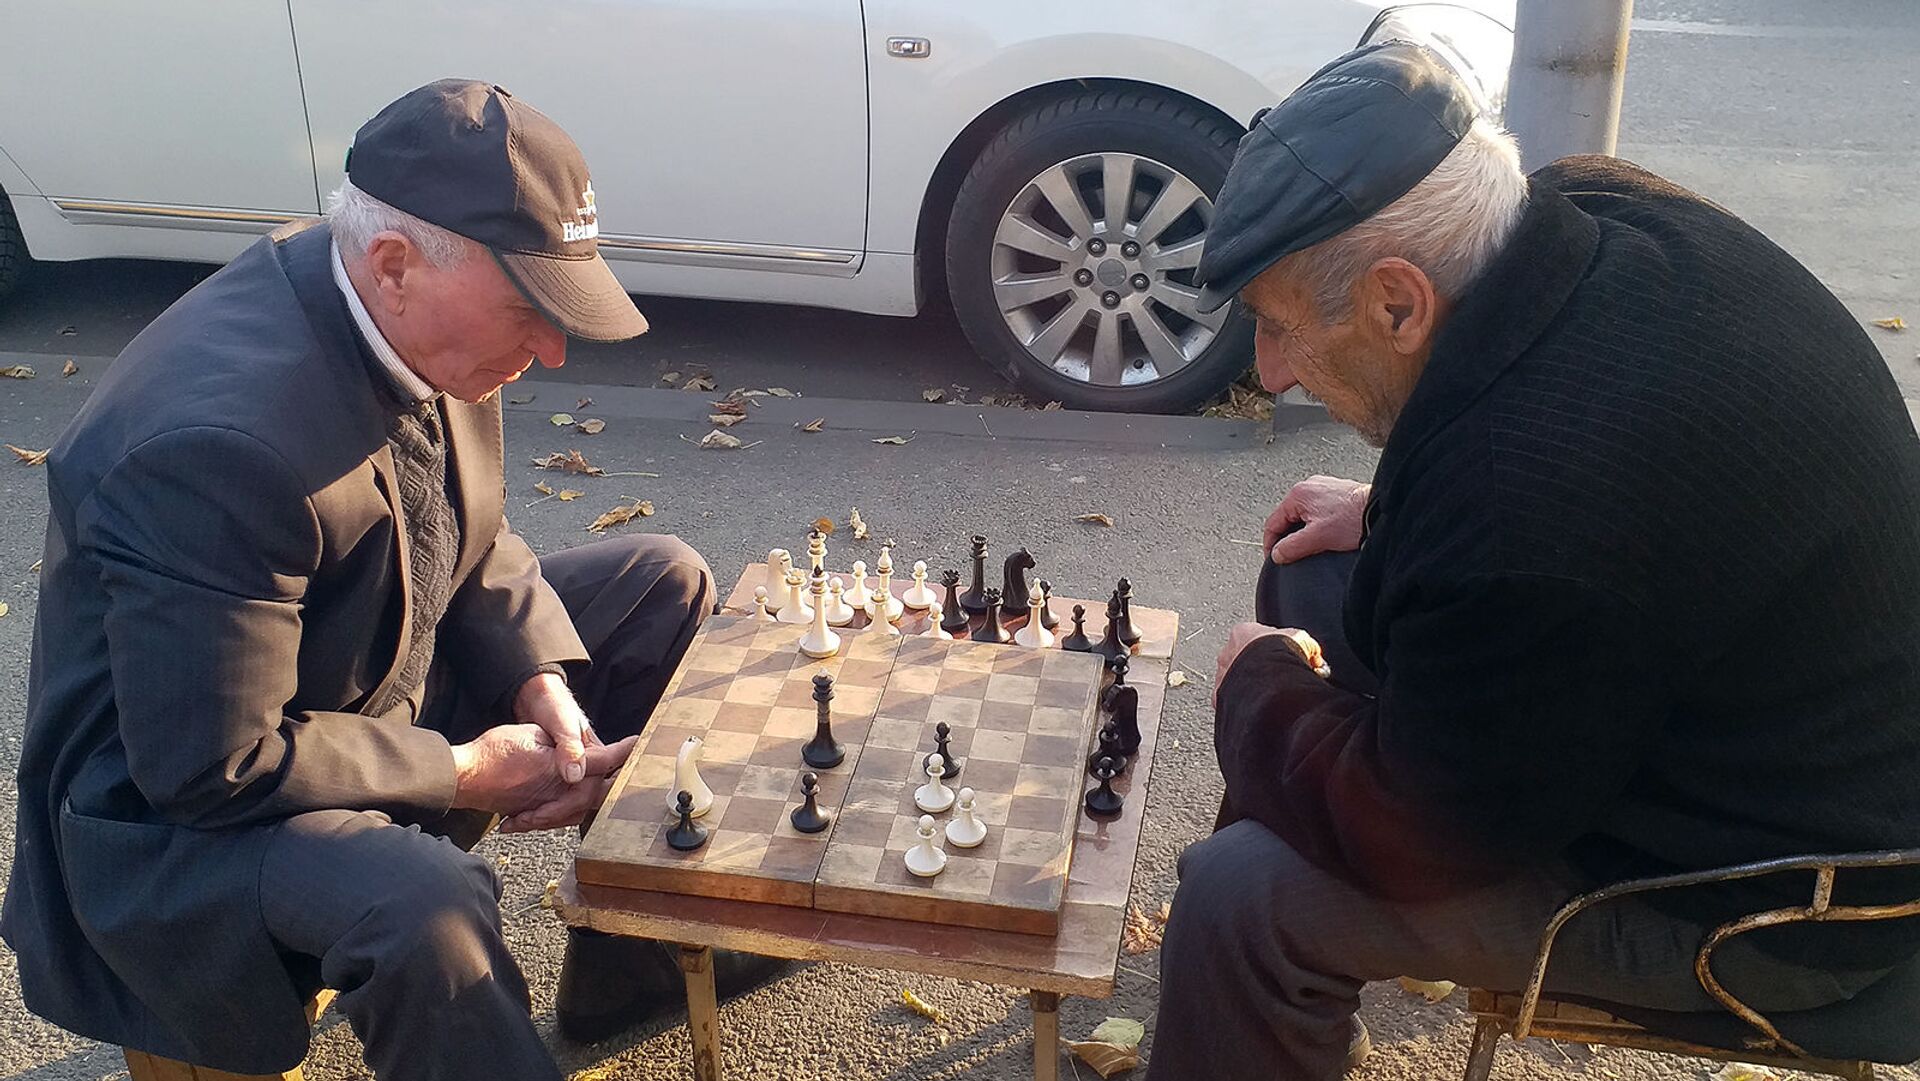 Пожилые люди играют в шахматы на одной из улиц Еревана - Sputnik Армения, 1920, 14.10.2021